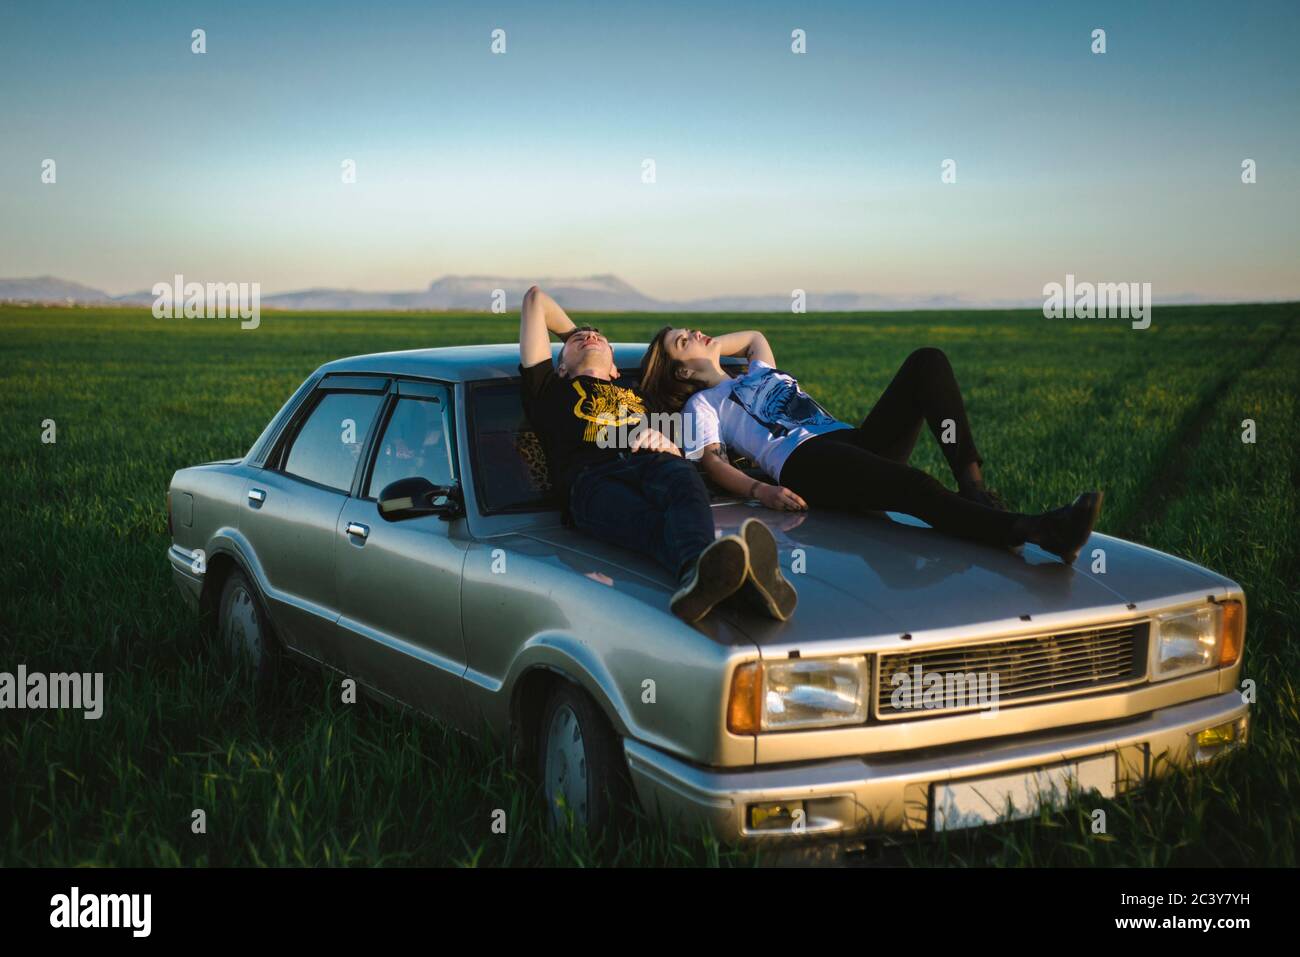 Ukraine, Crimée, couple assis sur une vieille voiture dans un paysage rural Banque D'Images